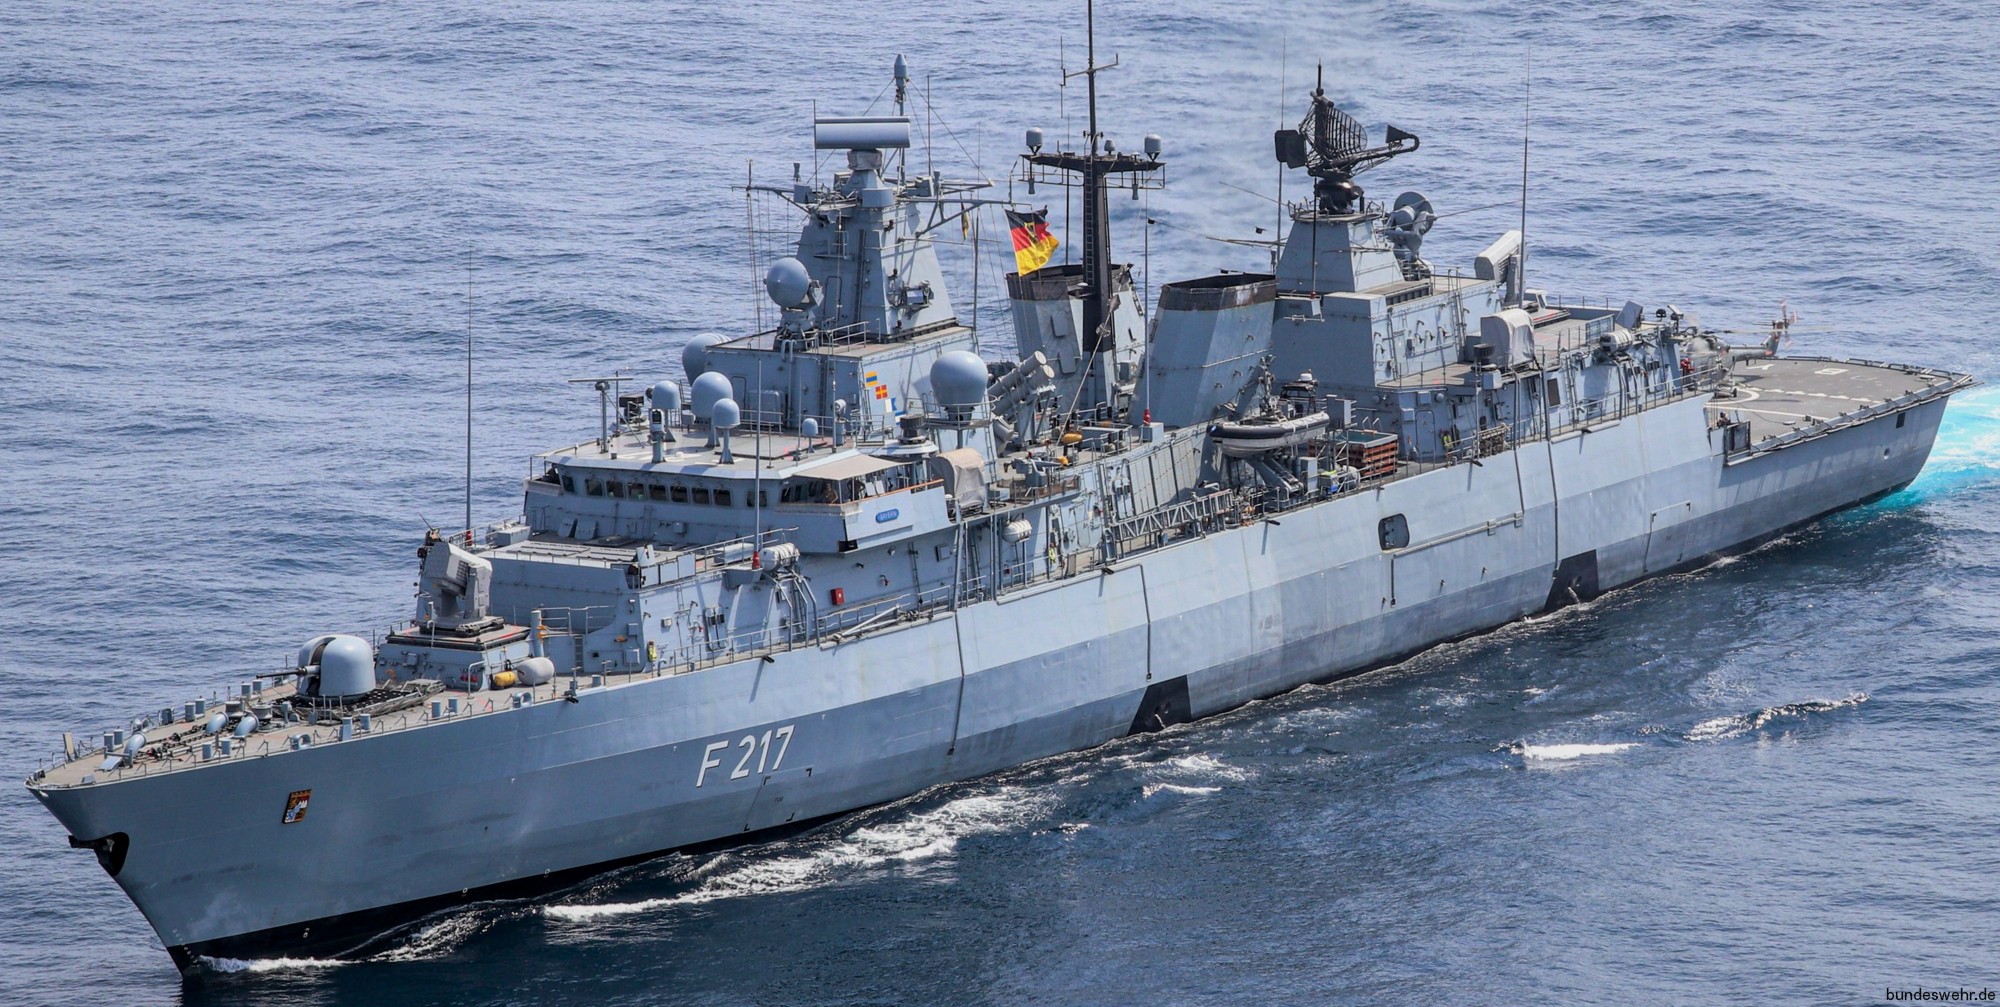 f-217 fgs bayern type 123 brandenburg class frigate german navy deutsche marine fregatte 42